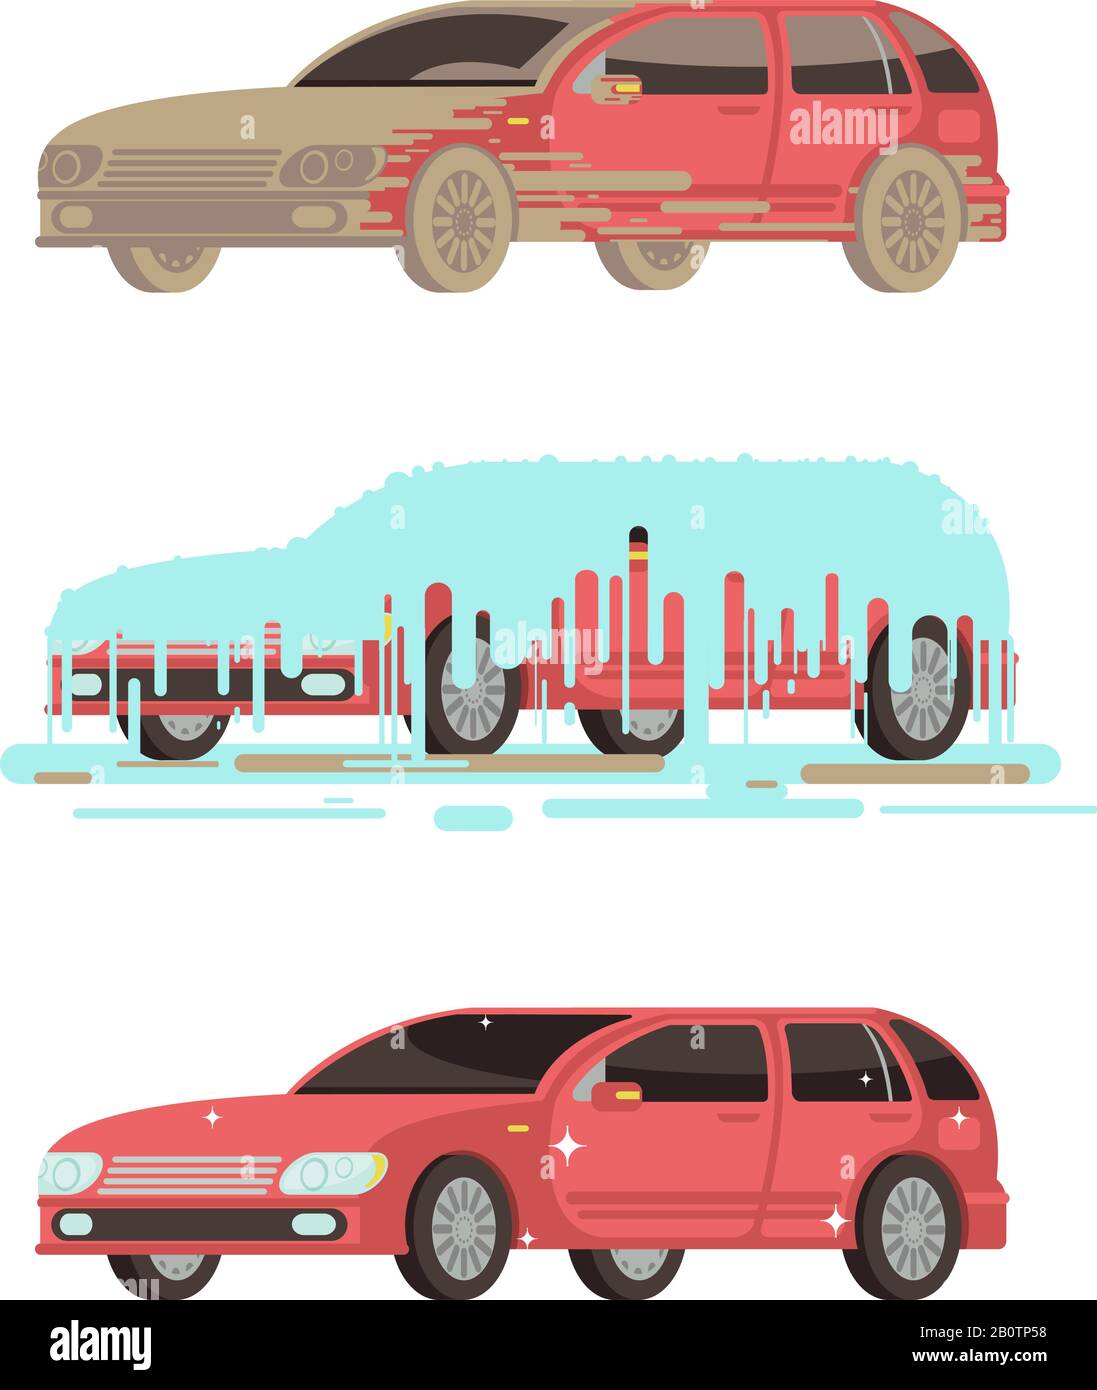 Detalles más de 83 coches sucios dibujos - camera.edu.vn